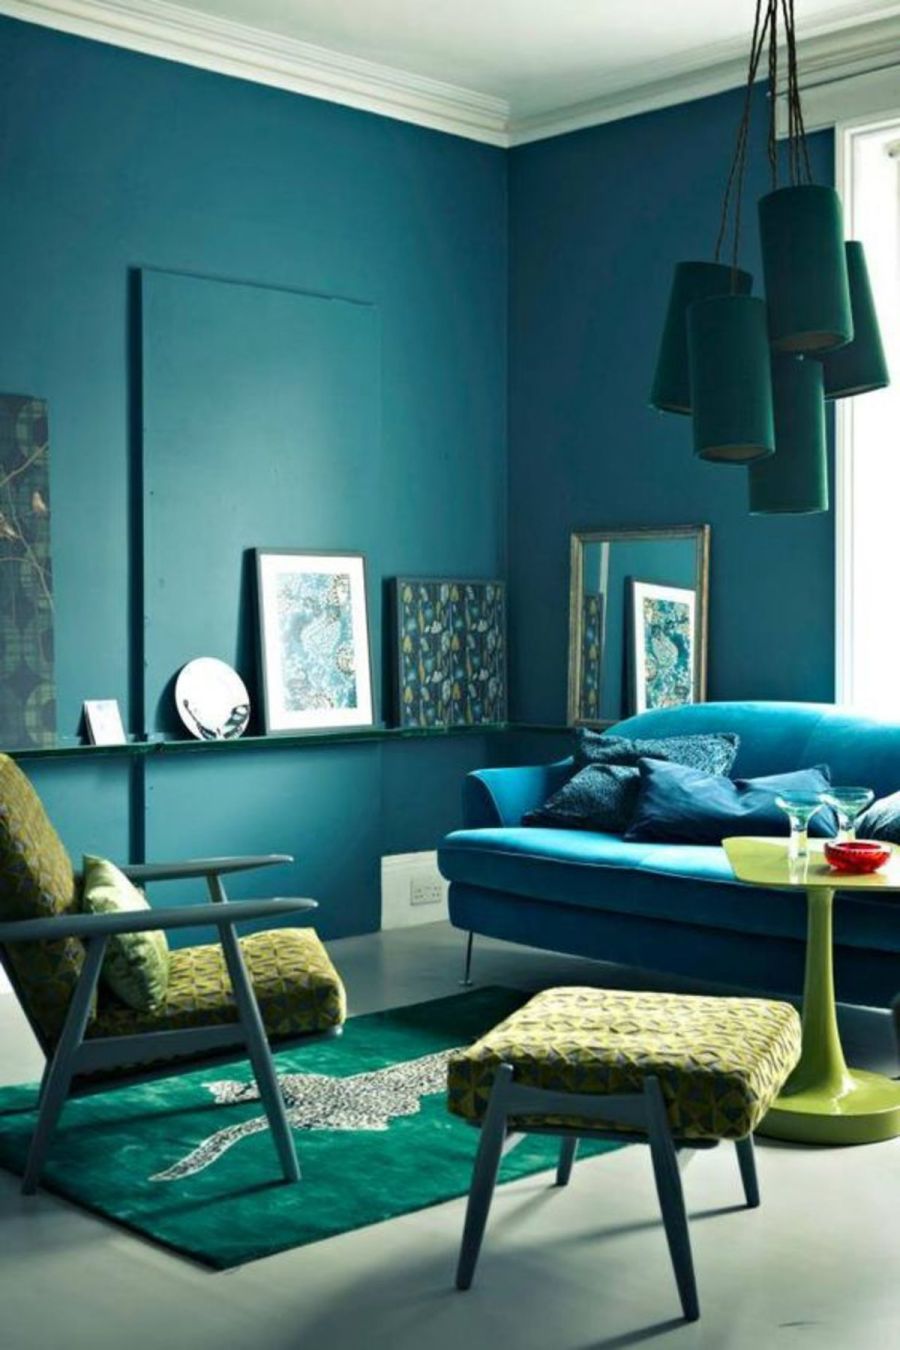 Ứng dụng quy tắc phối màu tương đồng trong phòng khách với xanh đen, xanh lam ngọc và vàng neon.